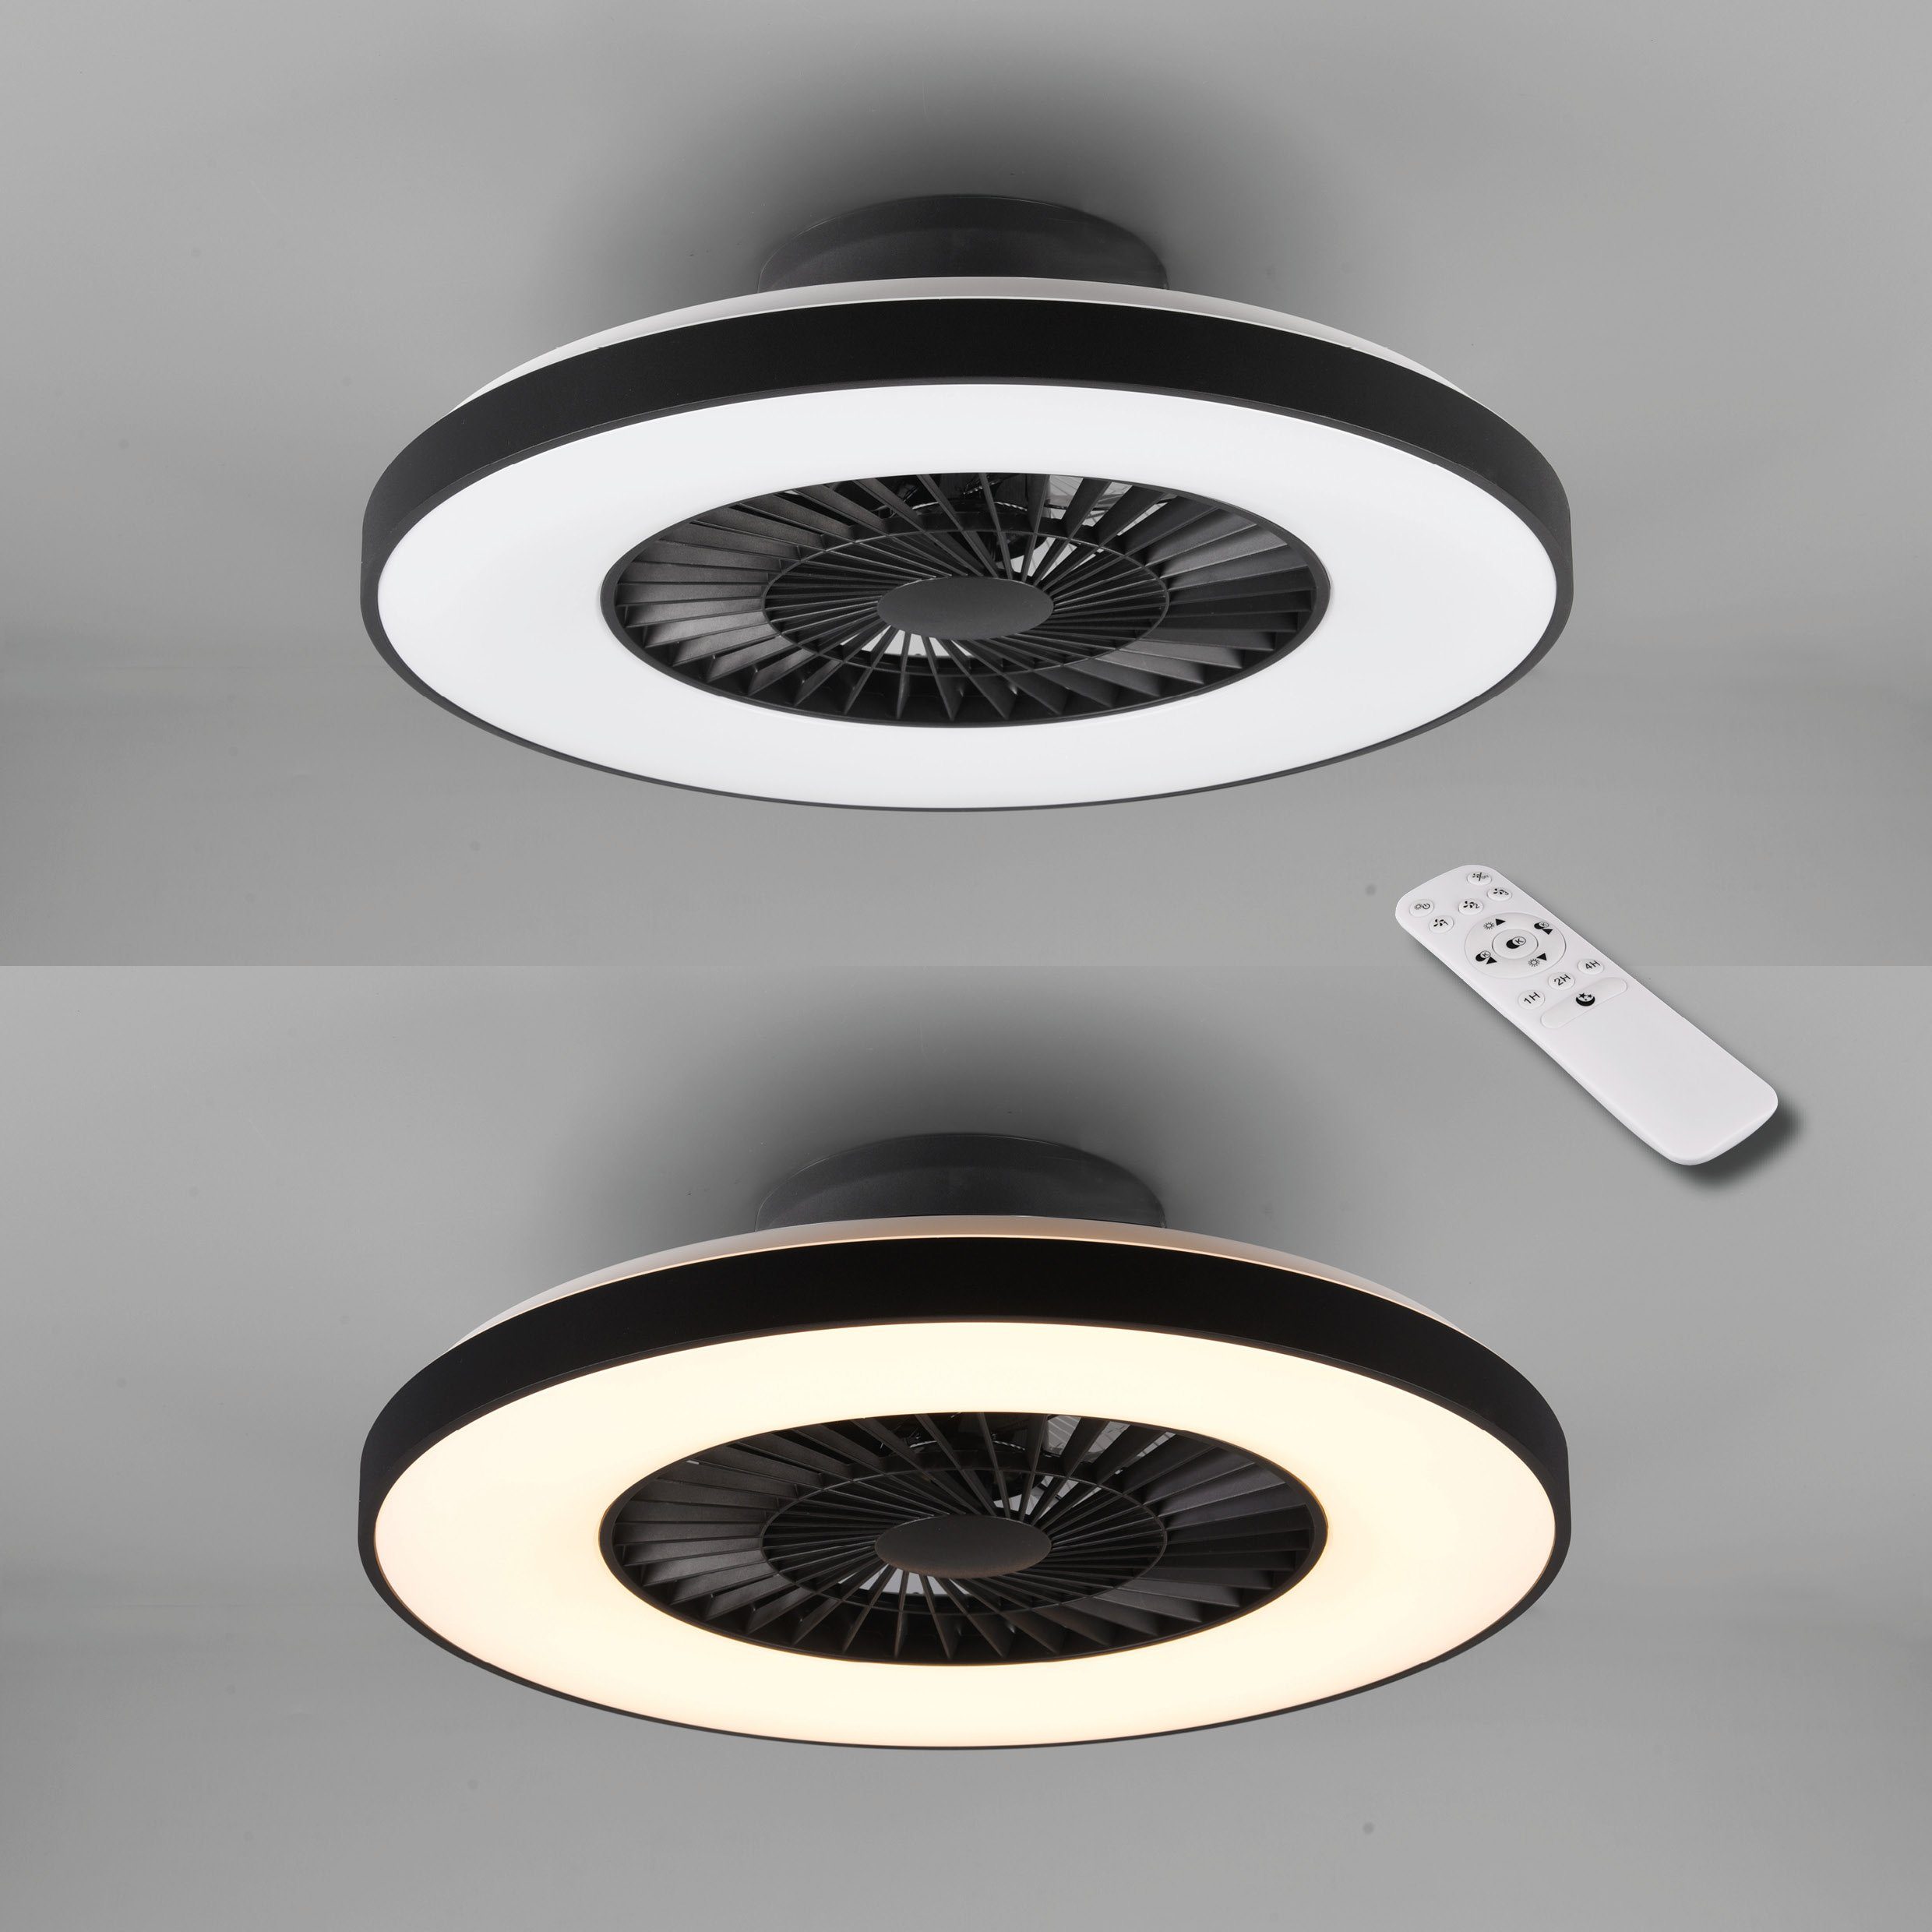 TRIO Leuchten LED Deckenleuchte getrennt Fernbedienung., mit integriert, Neutralweiß, fest Ventilatorfunktion, Ventilator Timerfunktion, schaltbar Halmstad, Ventilator, LED Leuchte